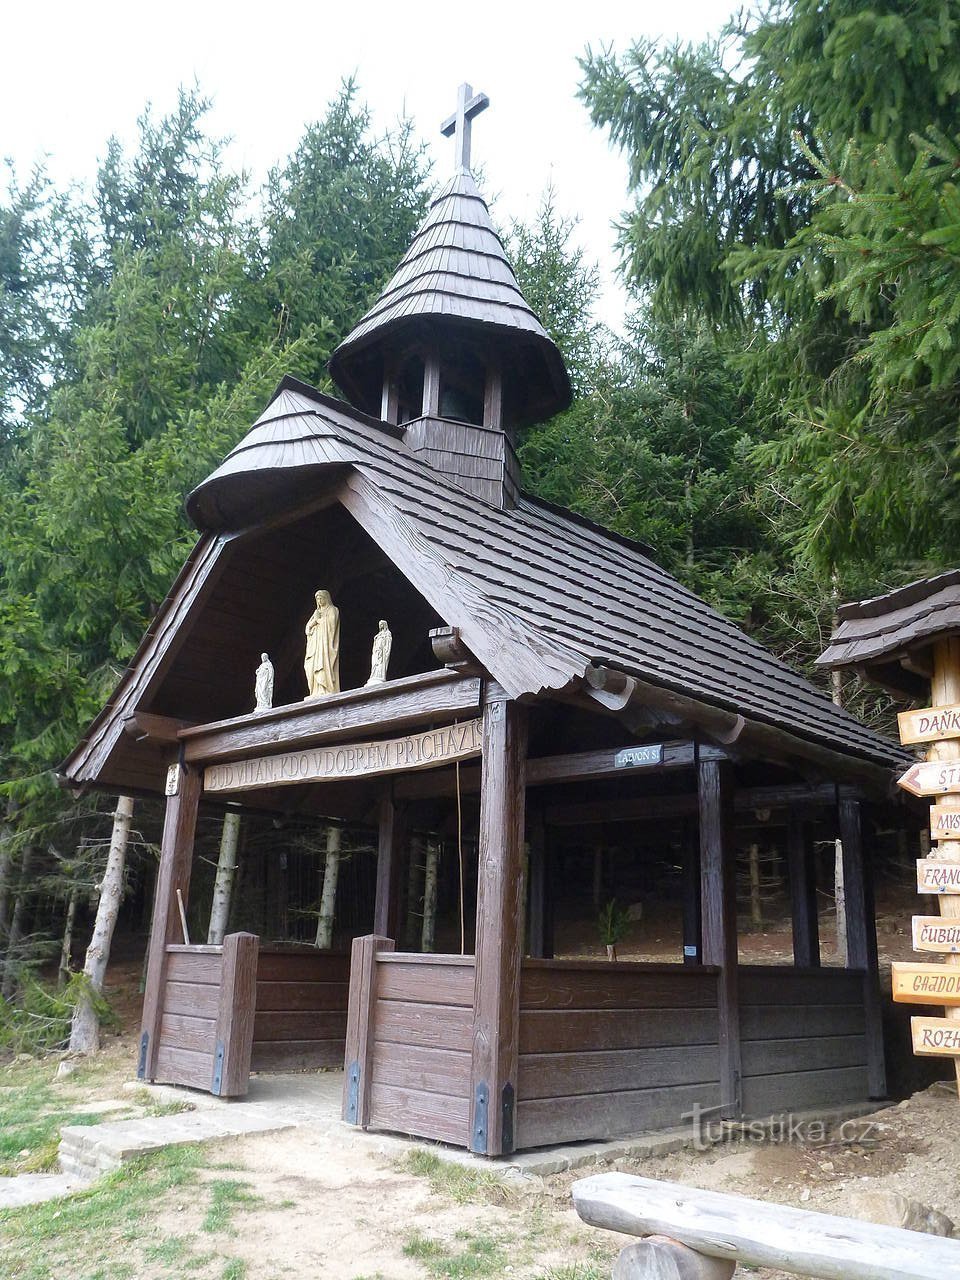 Drvena kapela sa zvonom i neobična